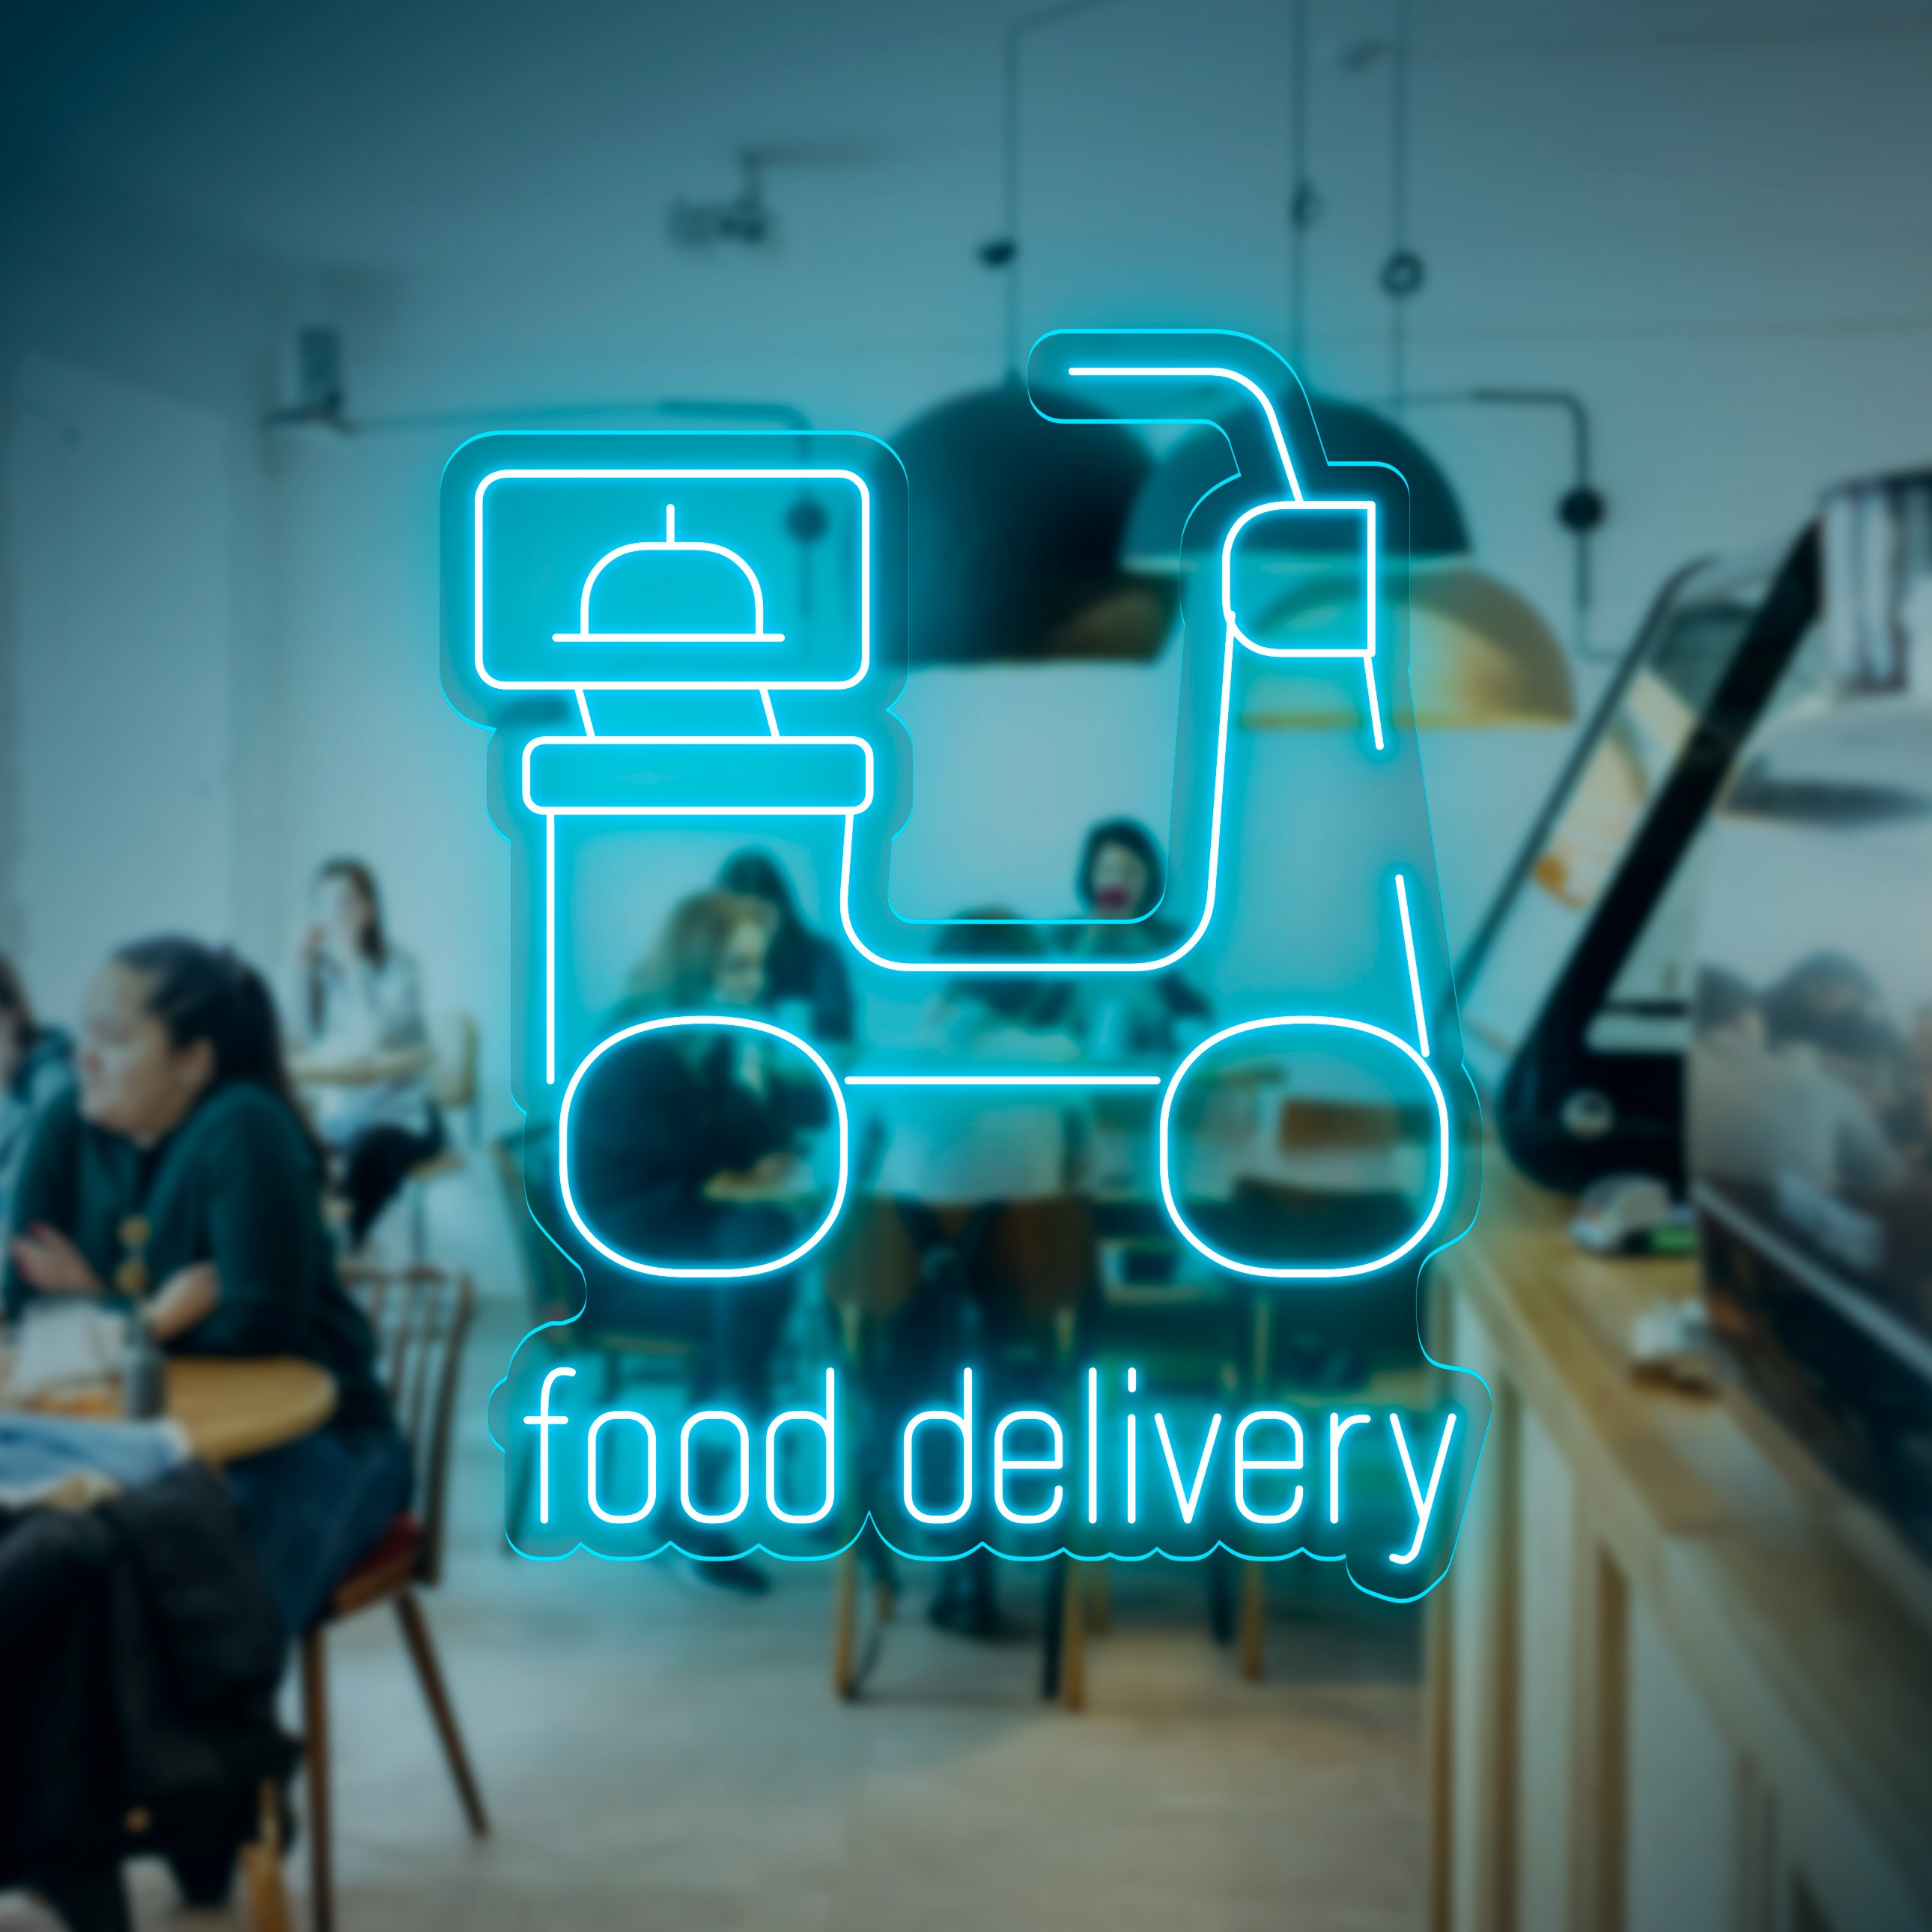 Bild von Neon für Restaurant "Food Delivery"